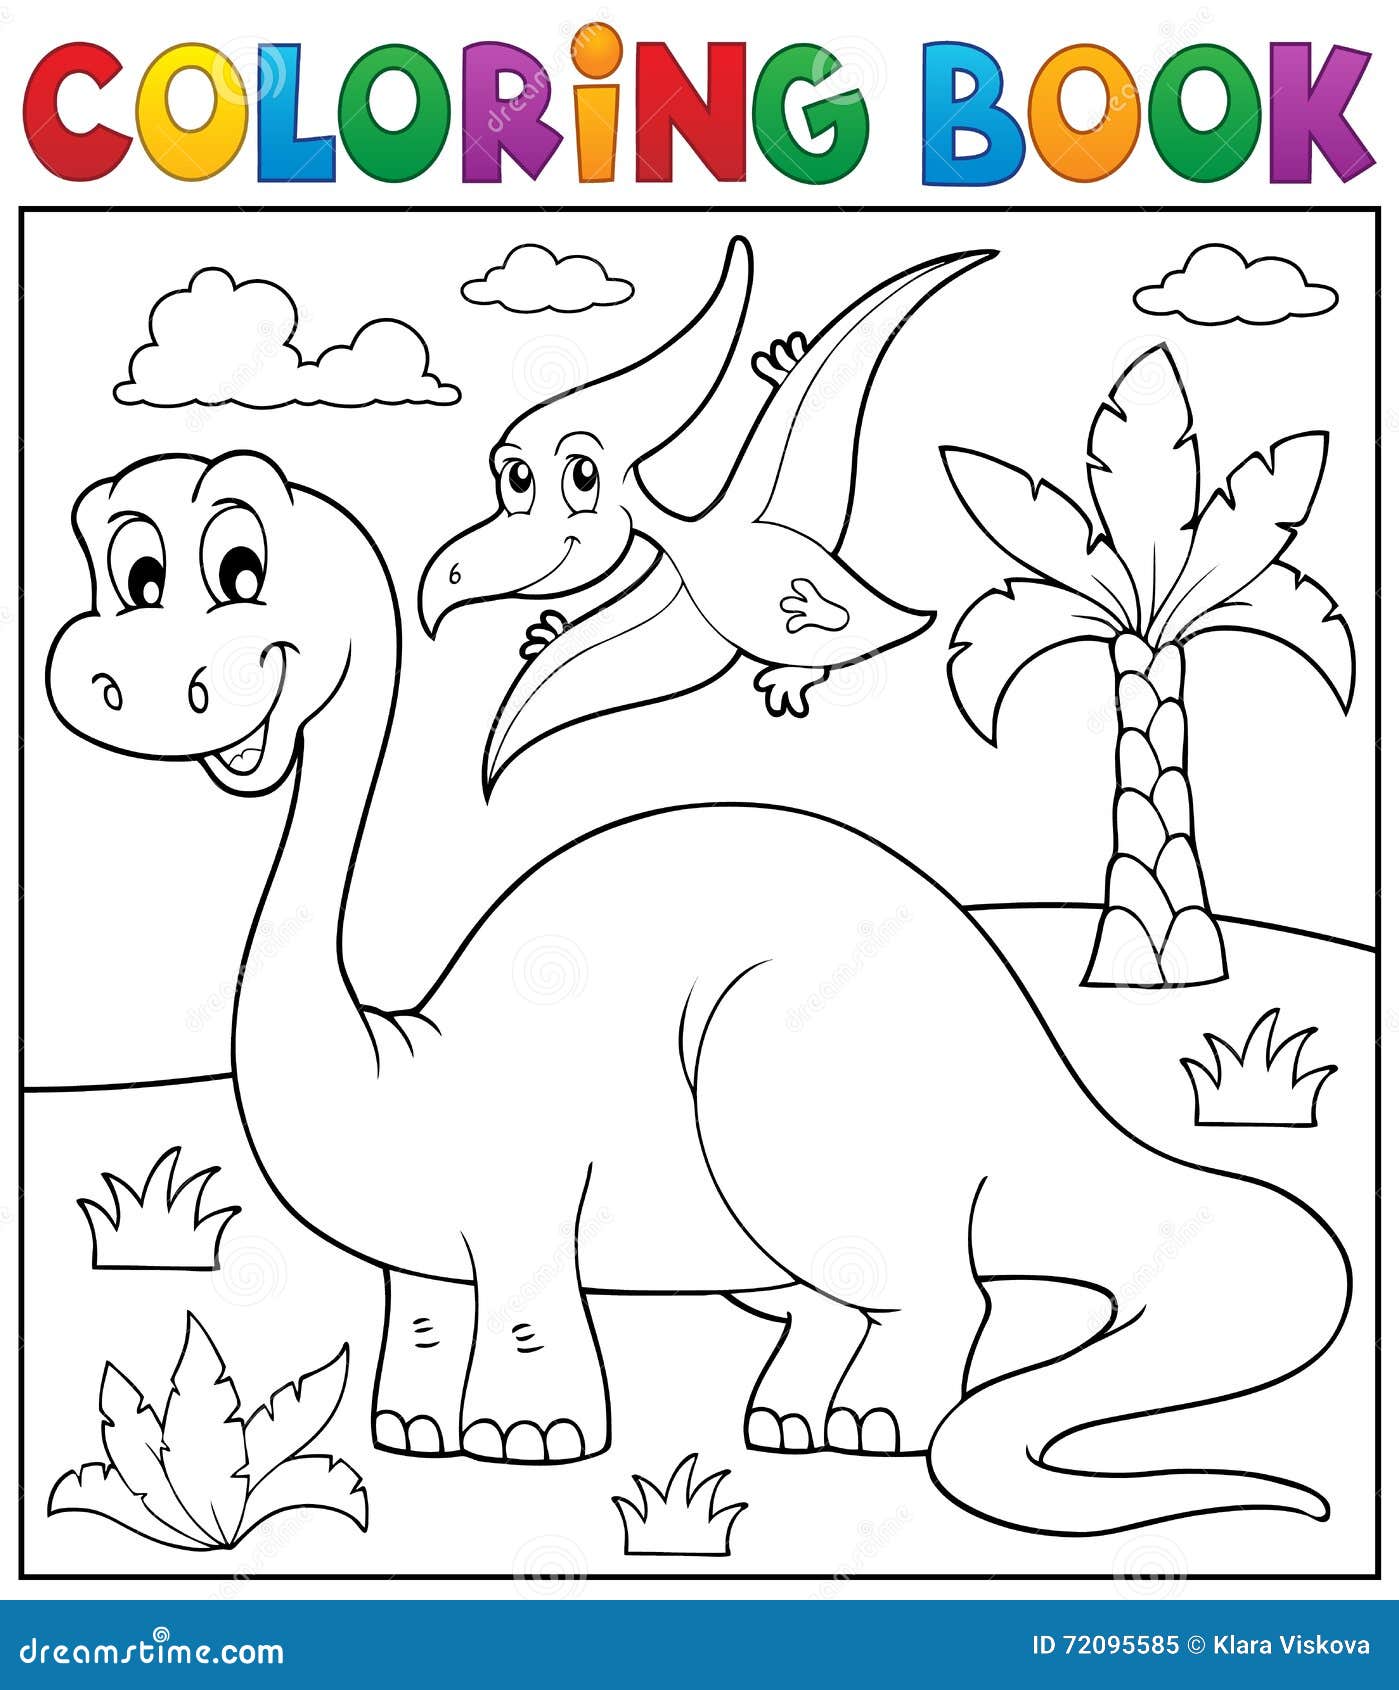 Desenho para pintar - dinossauro 2 